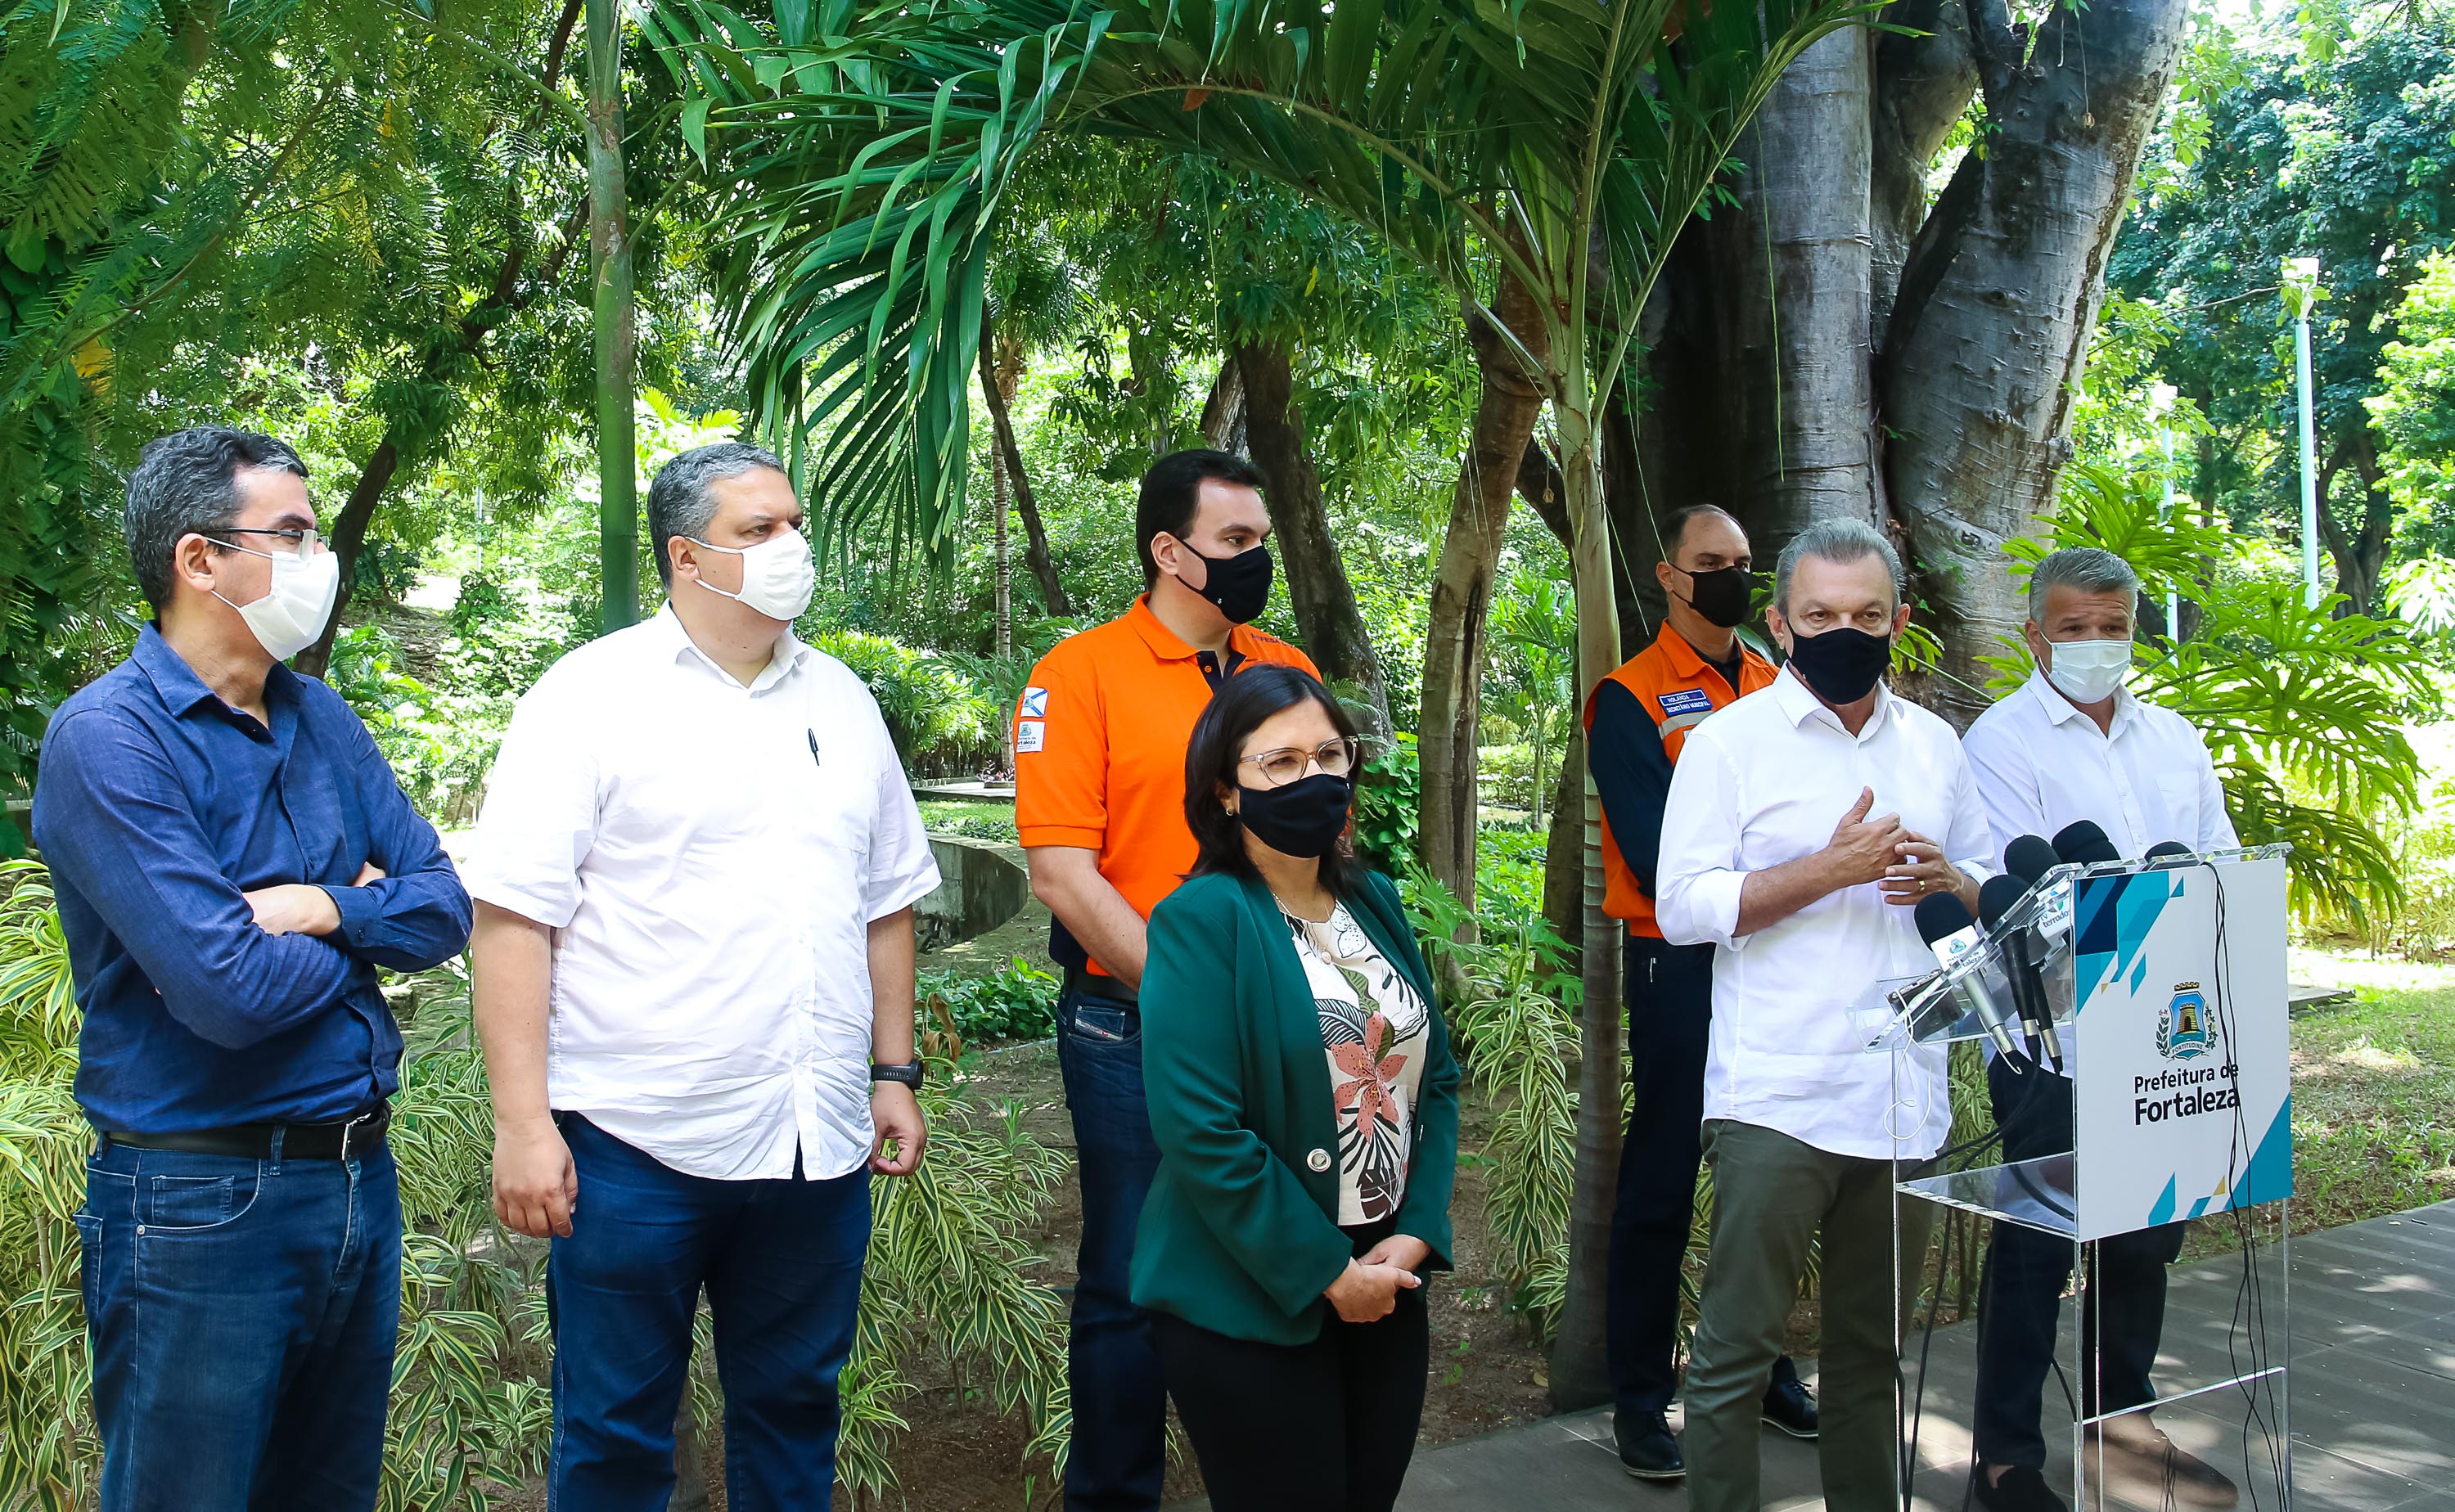 grupo de pessoas em pé em um jardim, todos usando máscara, enquanto dão entrevista